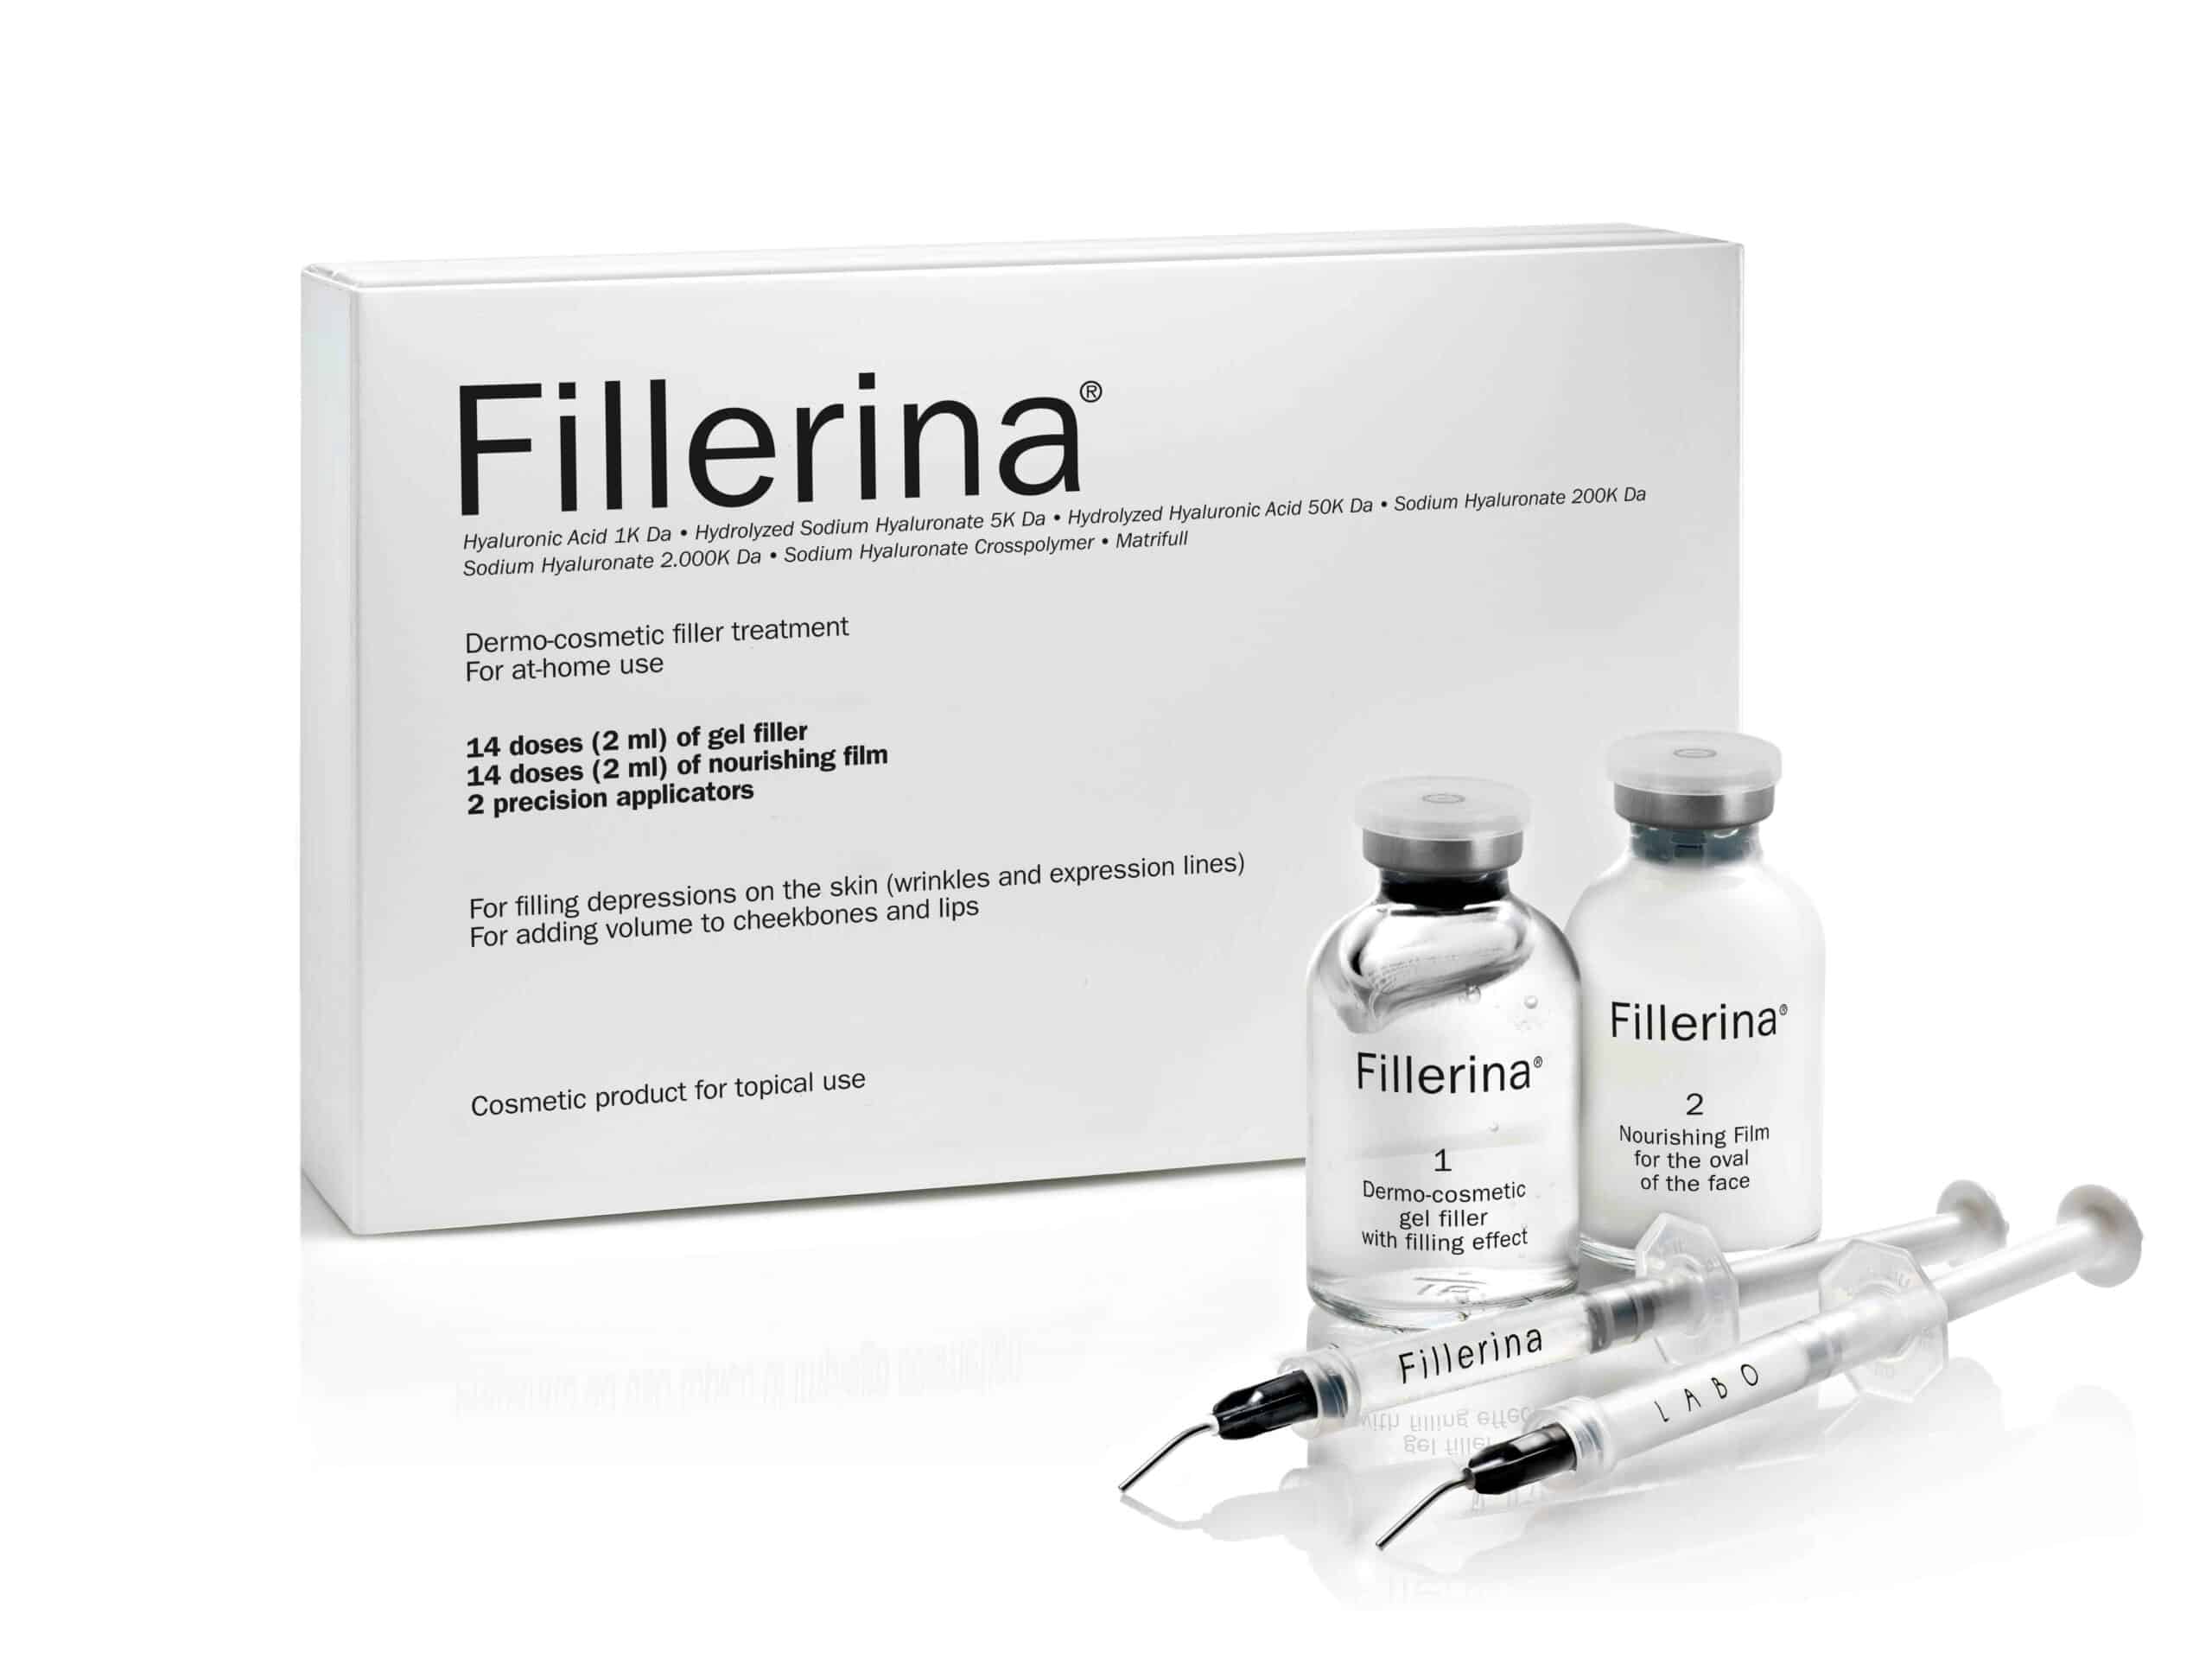 FILLERINA dermokosmētiskās pildvielas komplekts 2x30 ml, Intensitāte 2 8051417235549